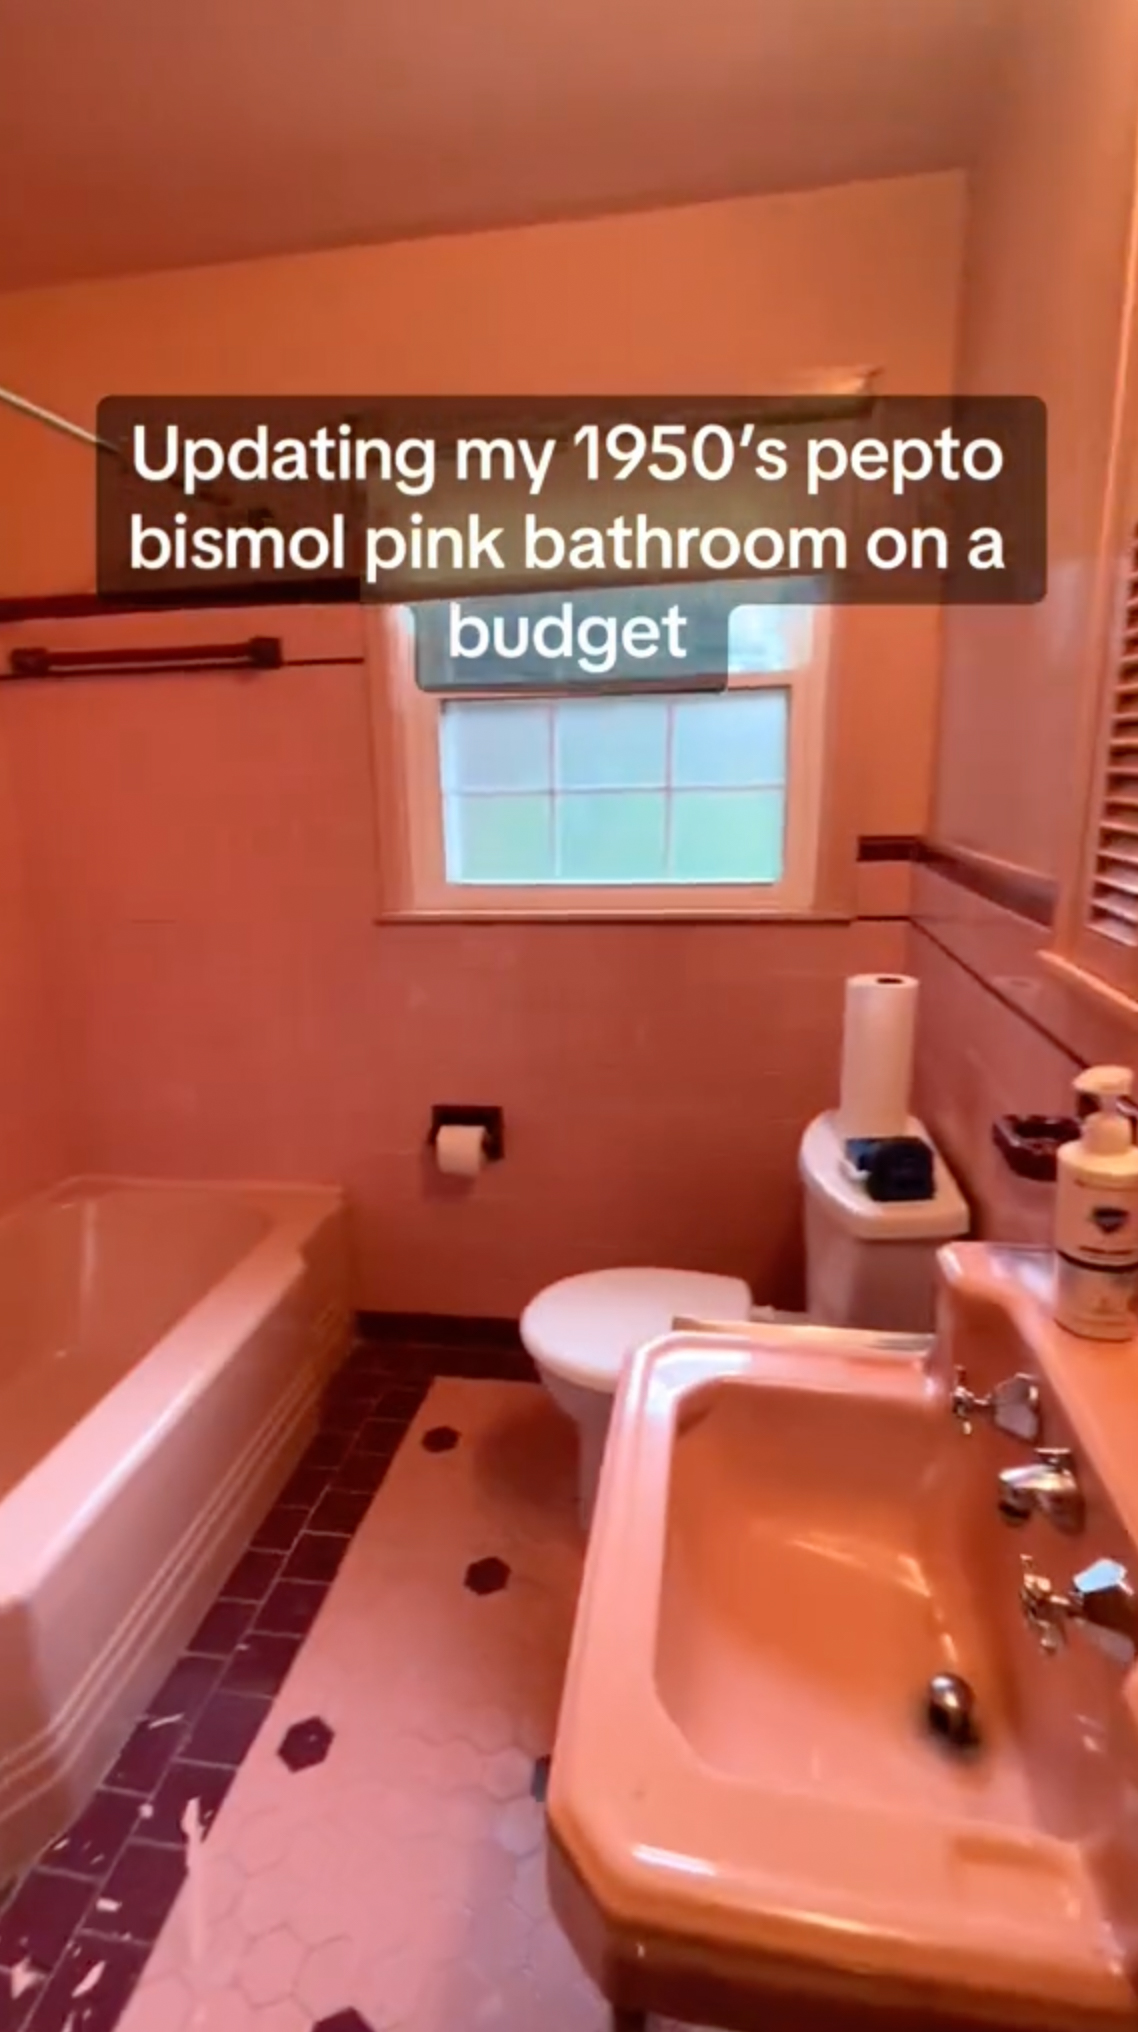 Sie modernisierte ihr rosafarbenes Pepto-Bismol-Badezimmer aus den 1950er-Jahren, was sich als umstritten erwies